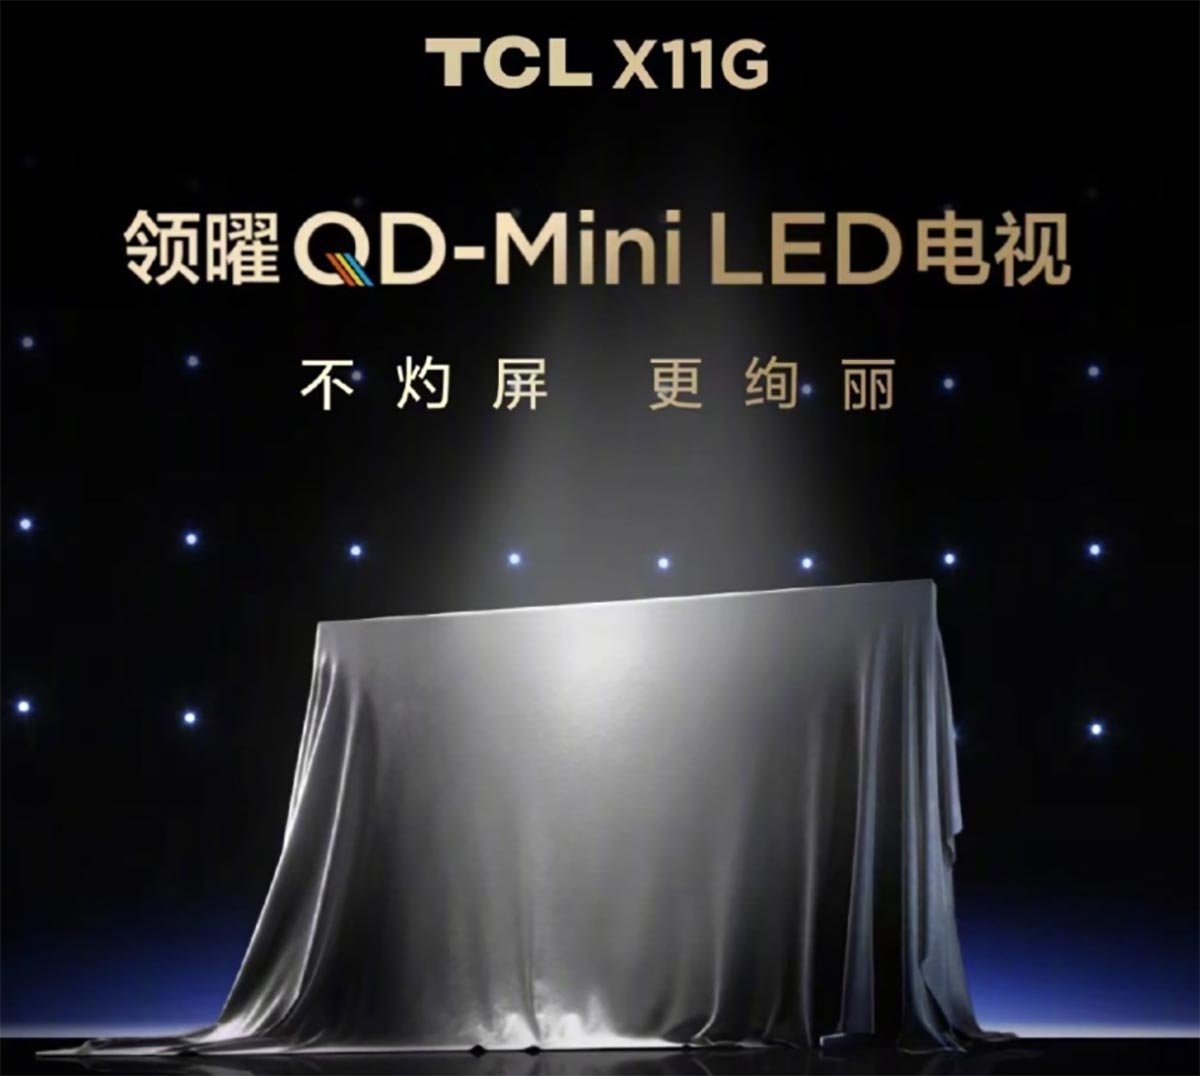 TCL X11G QD-mini LED TV.jpg